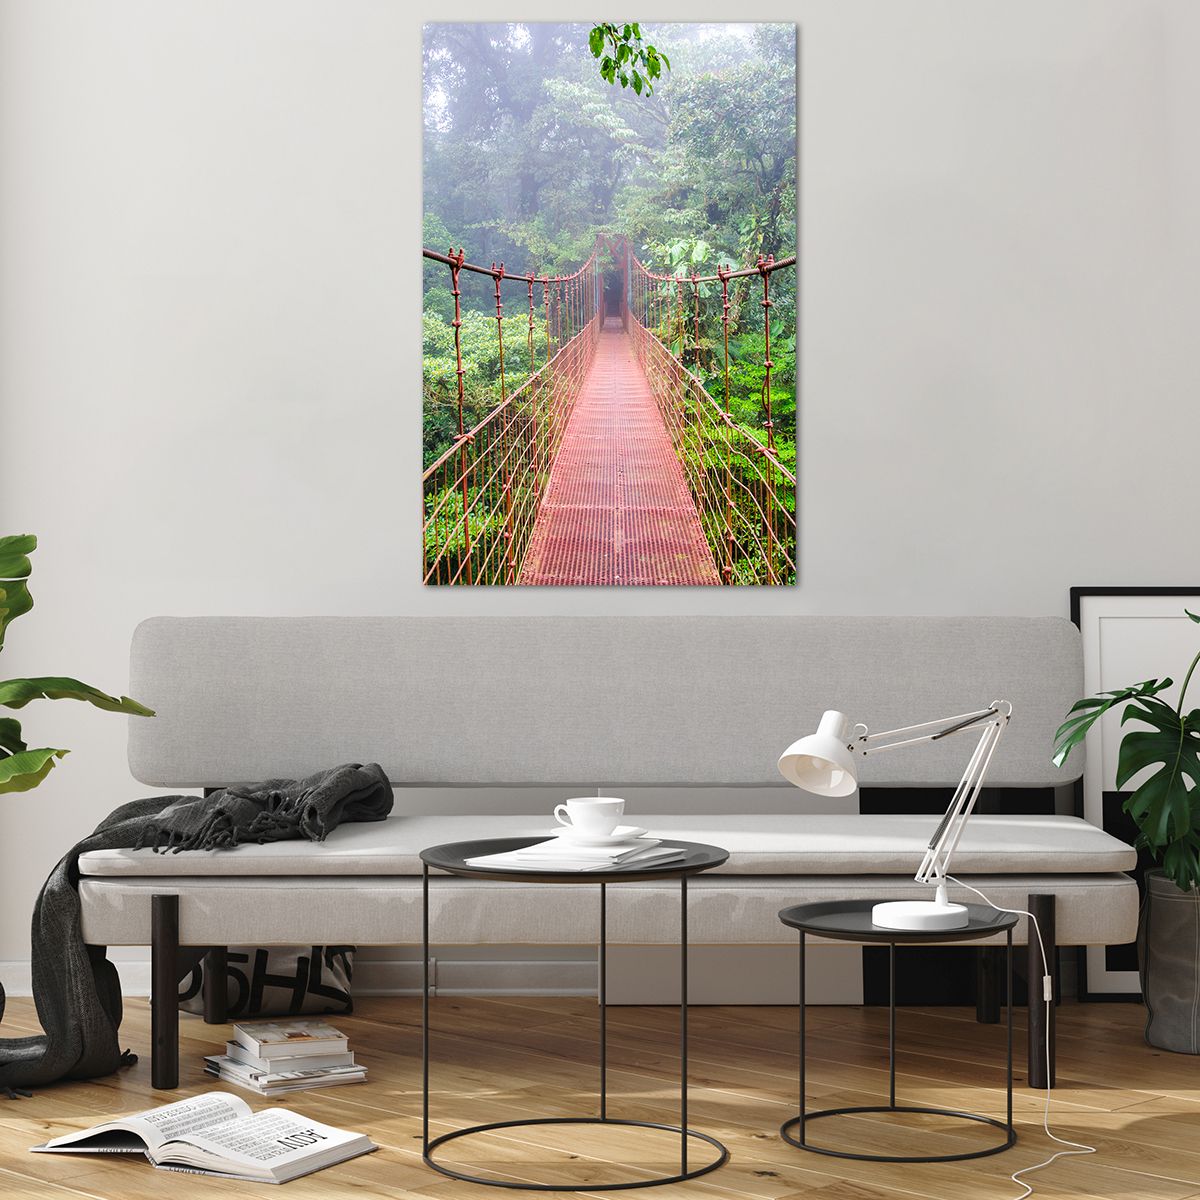 Bilder auf glas Landschaft, Bilder auf glas Urwald, Bilder auf glas Costa Rica, Bilder auf glas Hängende Brücke, Bilder auf glas Natur